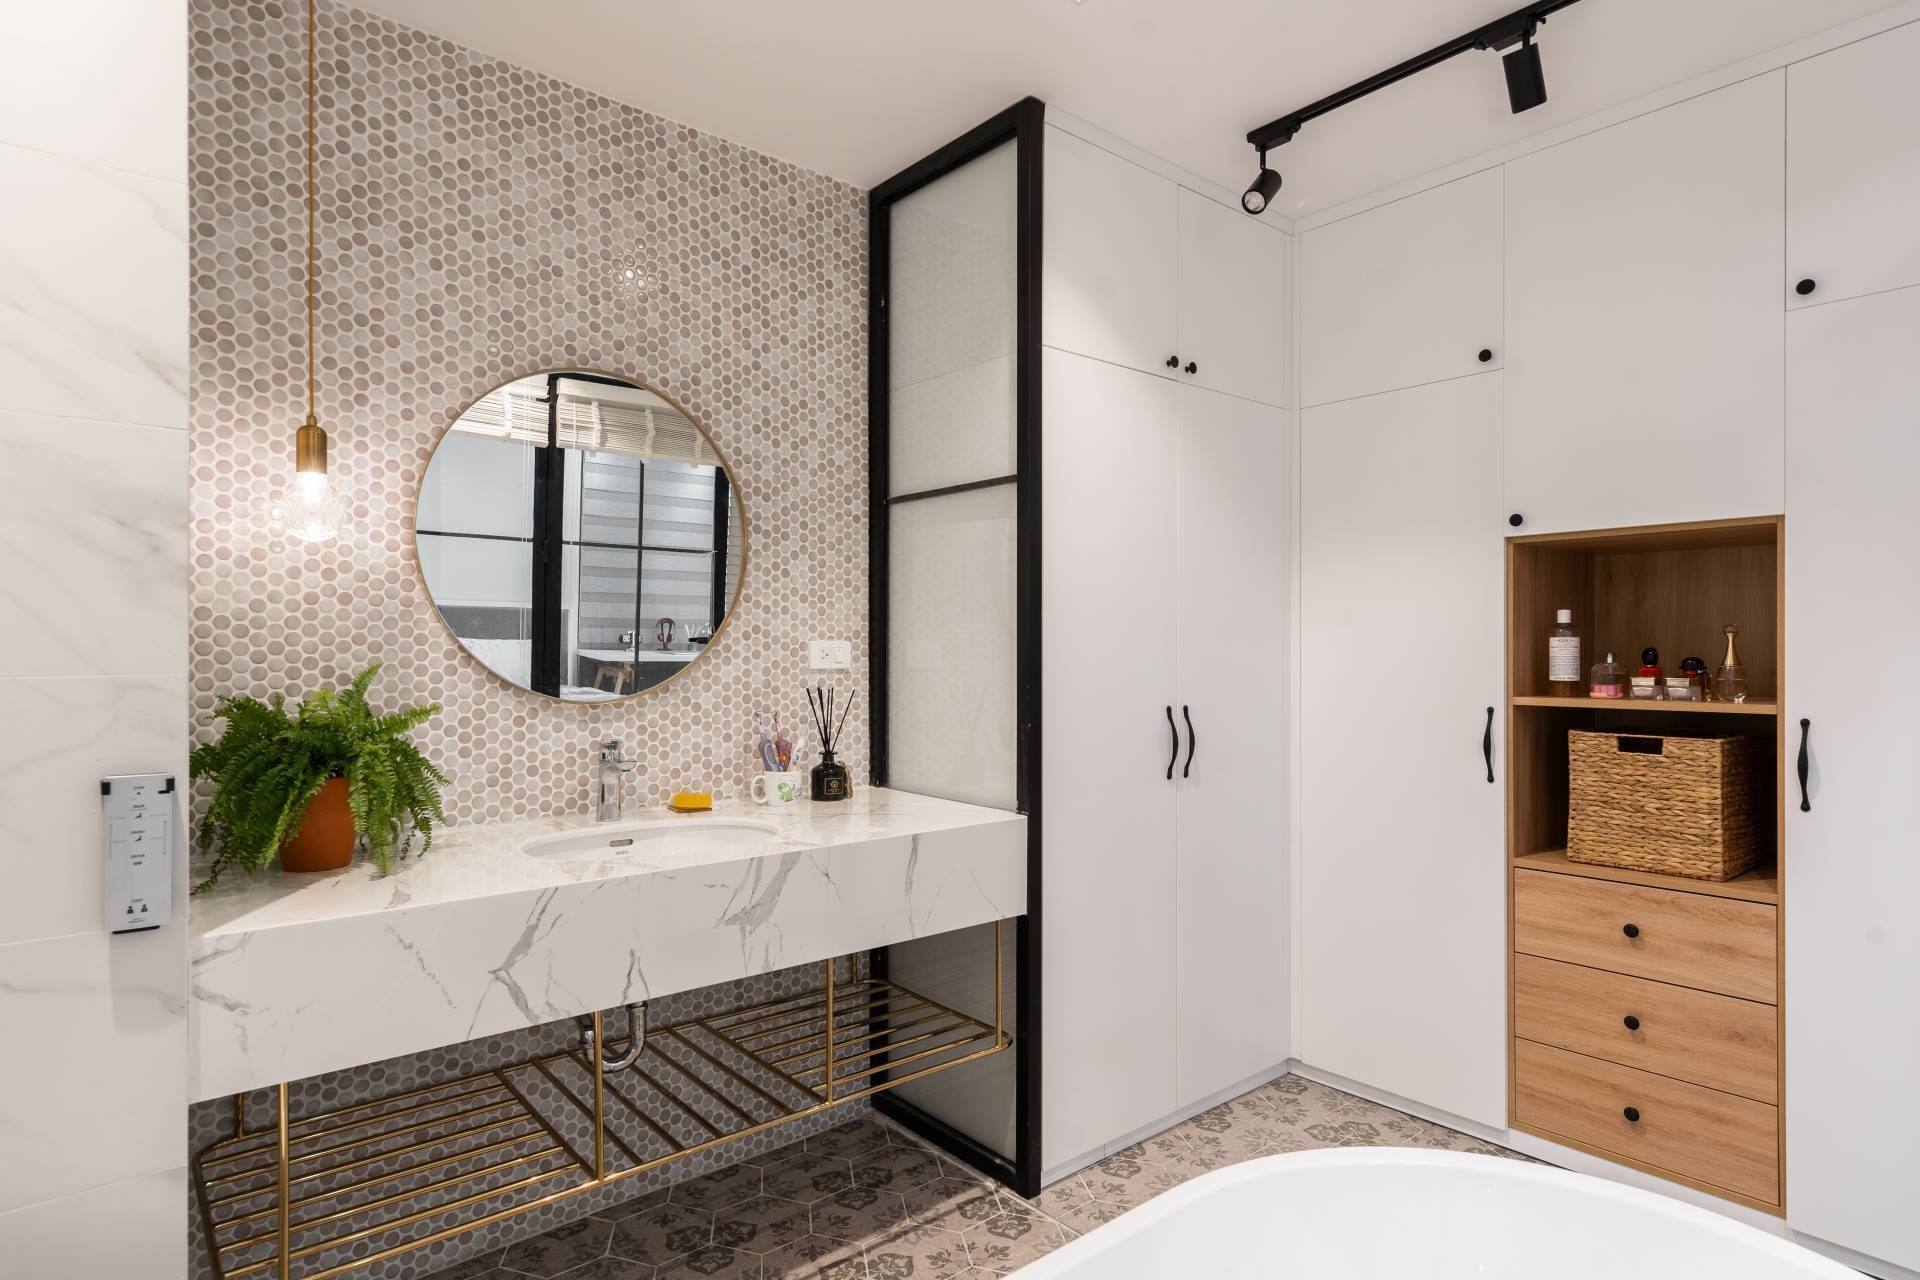 Thiết kế mở và cửa kính trong suốt giúp tối ưu hóa ánh sáng tự nhiên trong phòng tắm Scandinavian